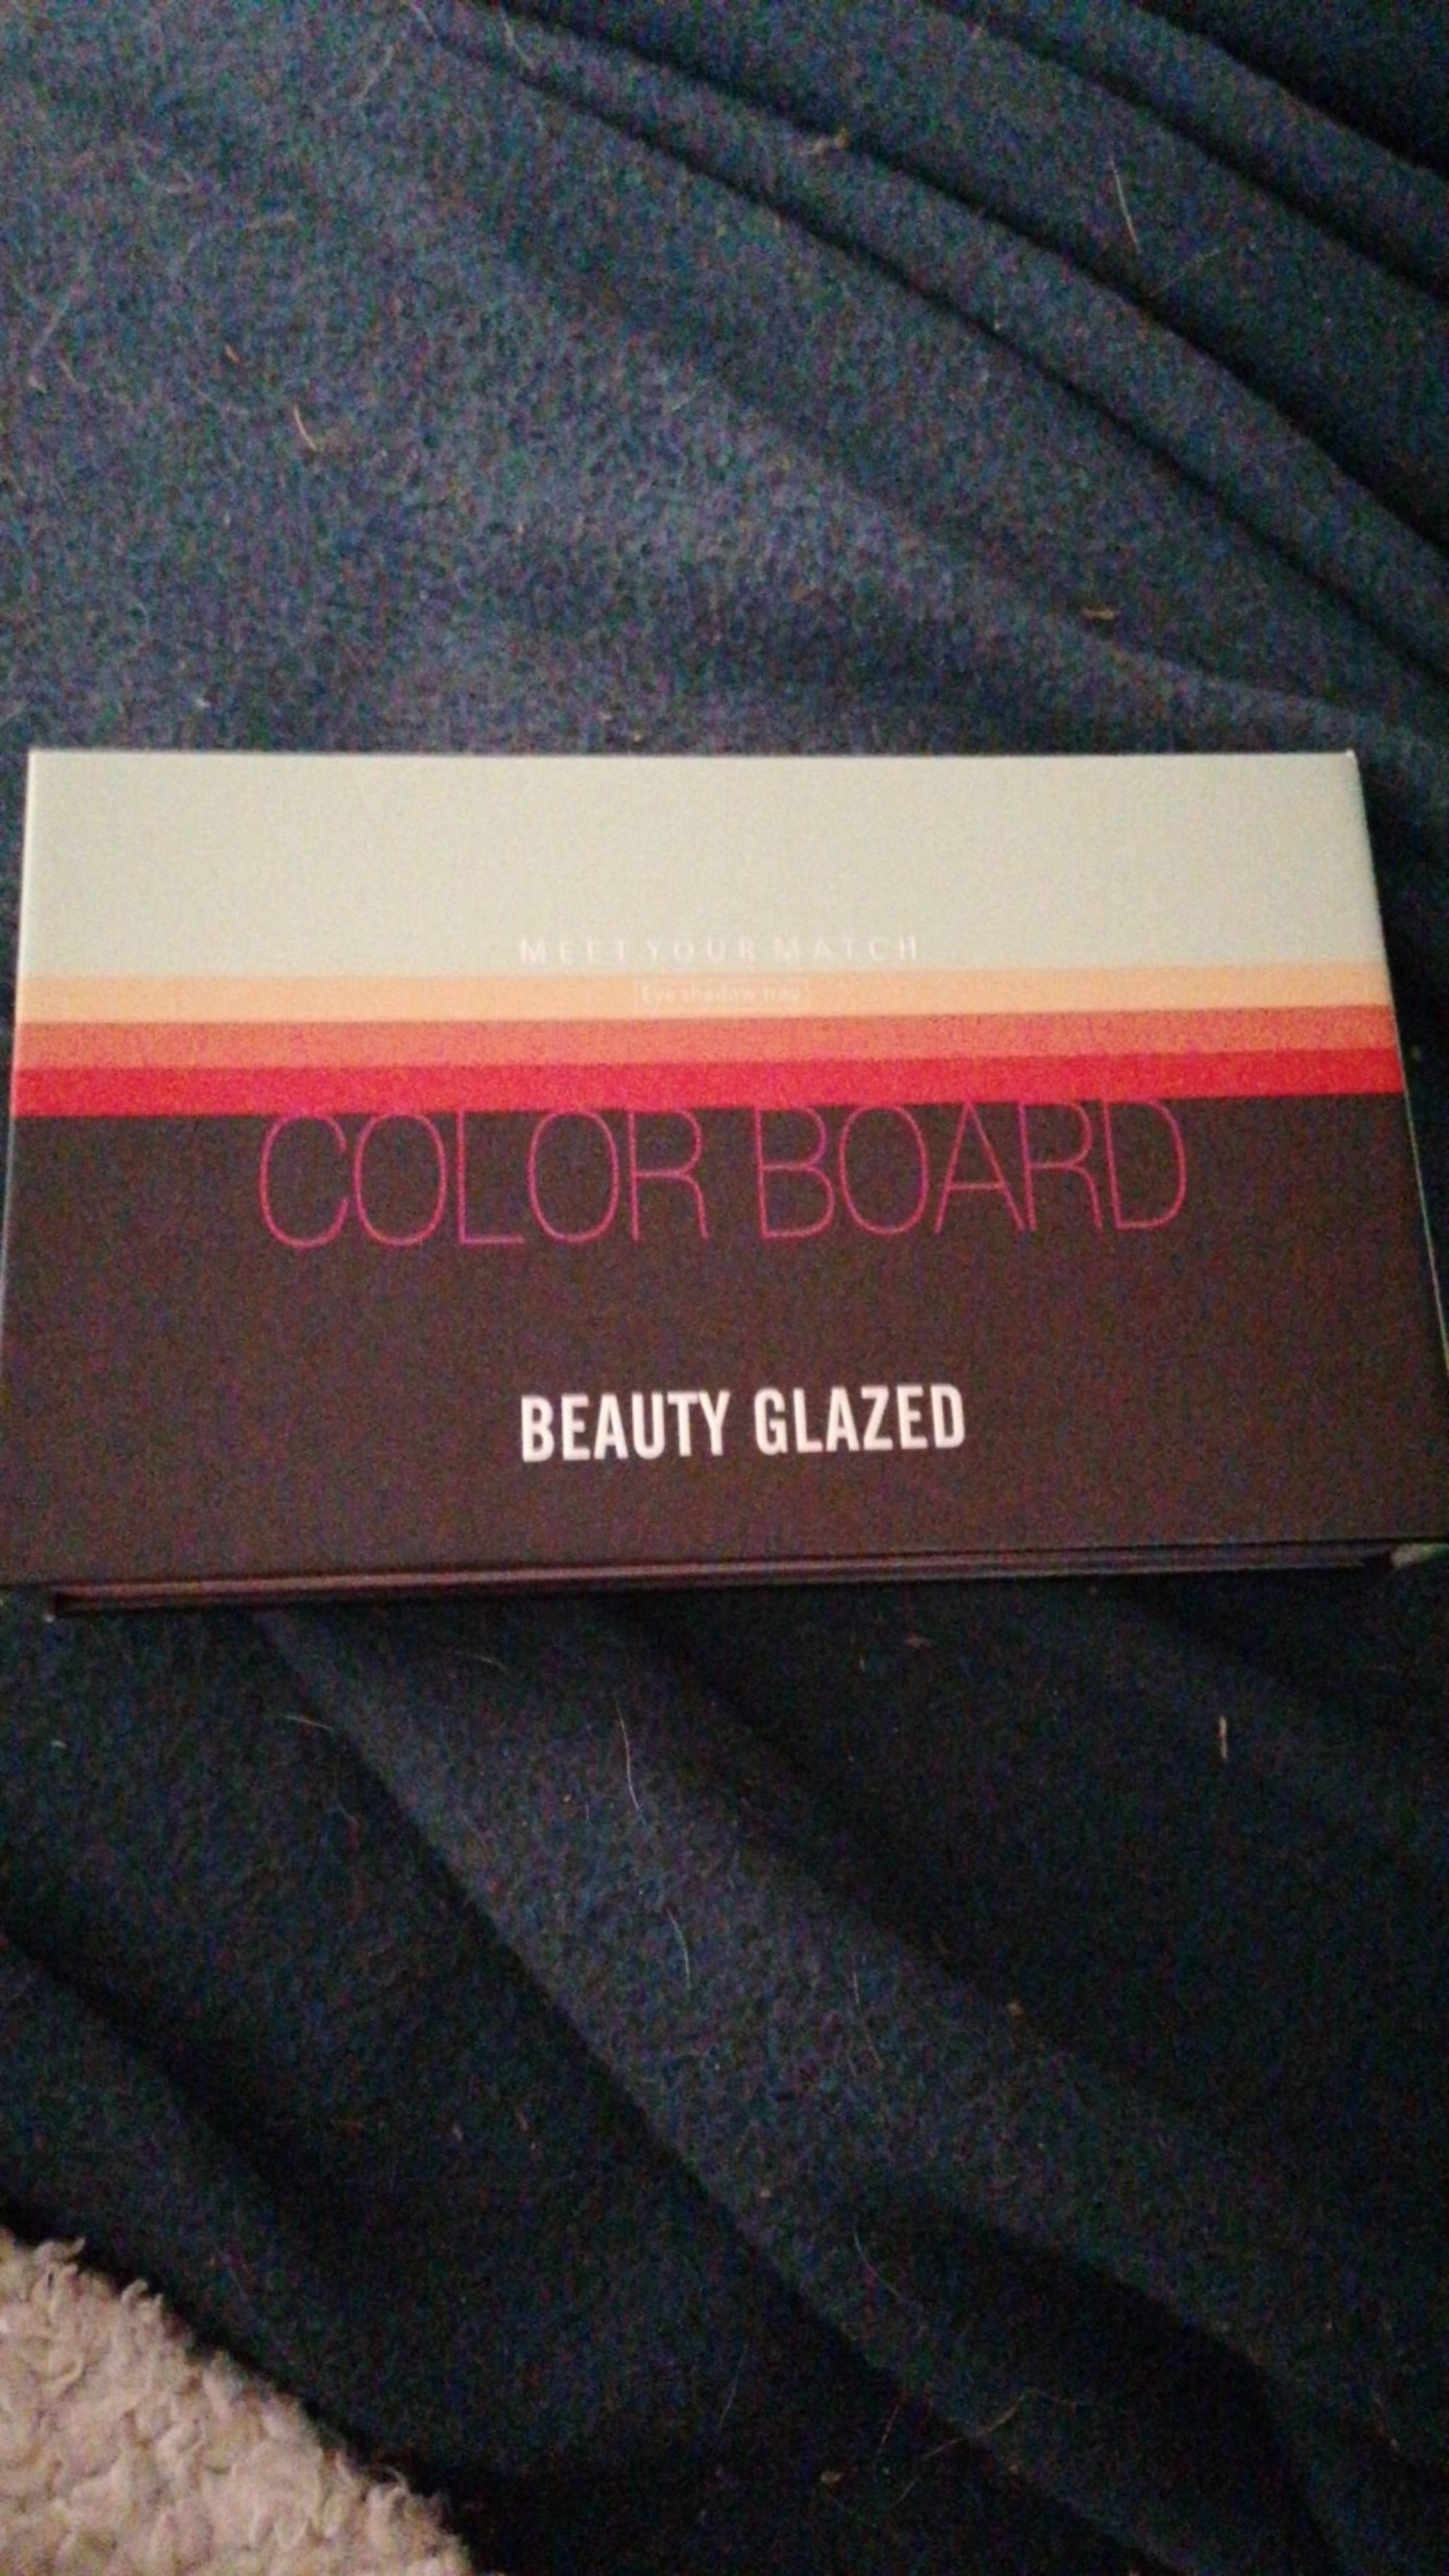 BEAUTY GLAZED - Color board - Eyeshadow